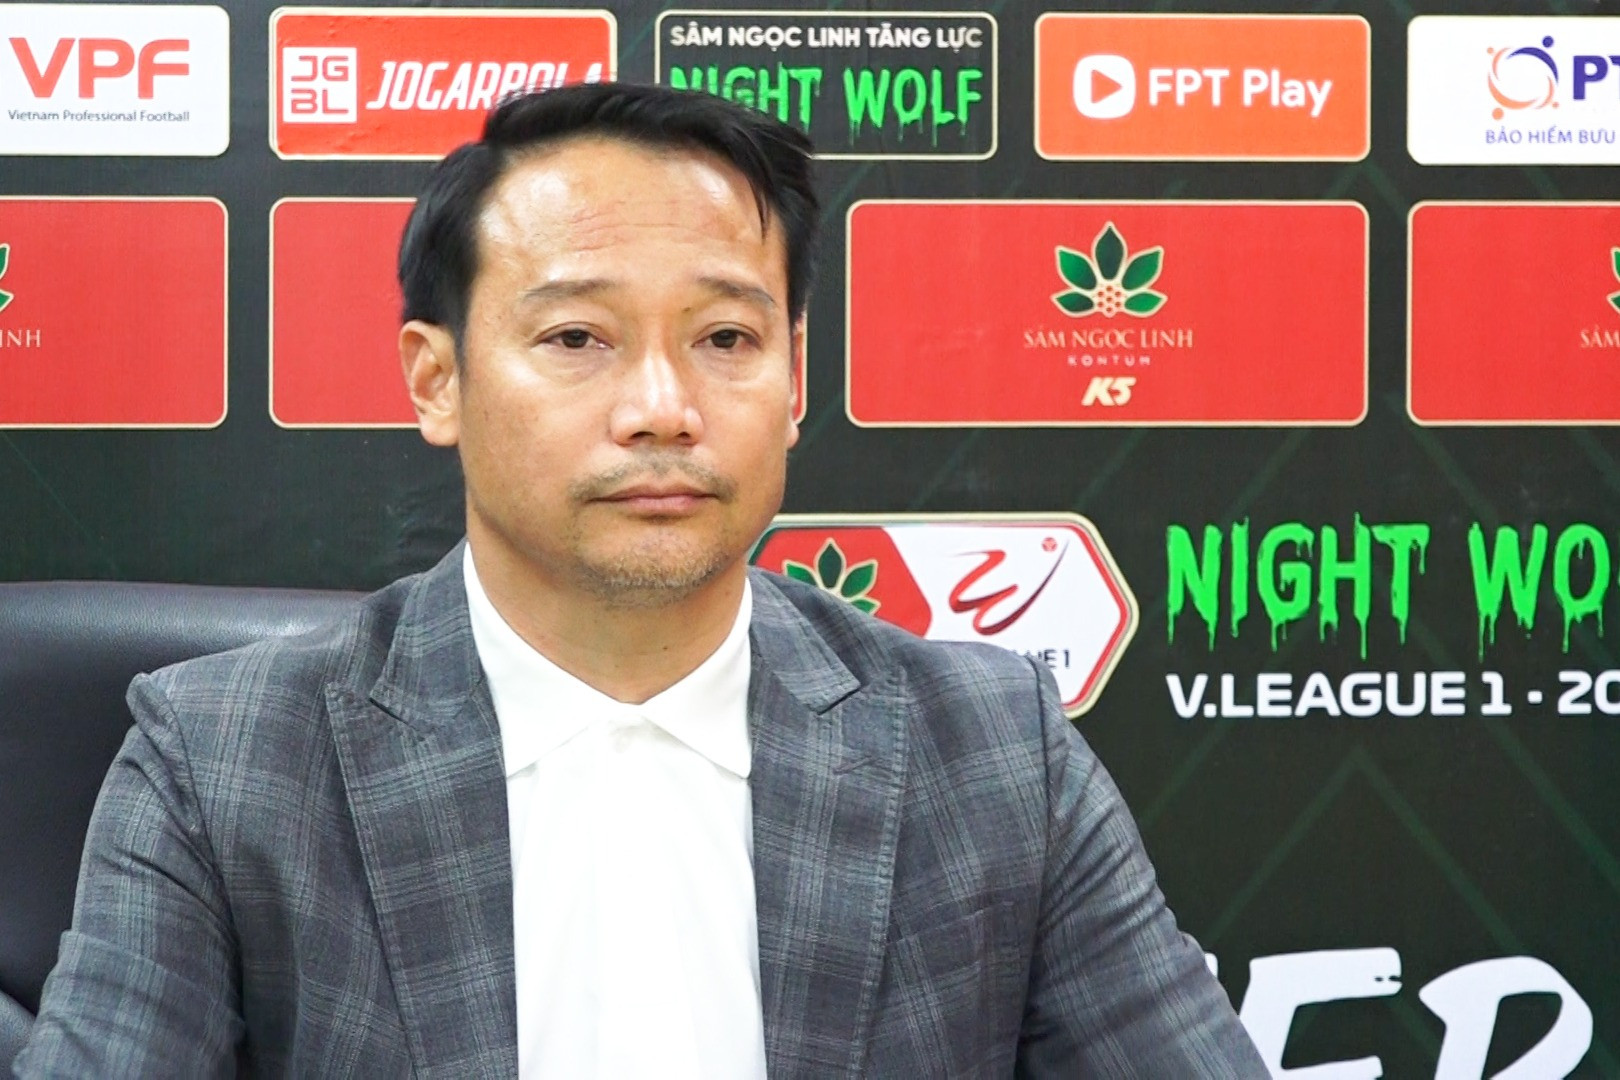 HLV Nam Định: 'Chẳng có giải đấu nào cứ thi đấu vài vòng lại nghỉ 1 tháng như V-League'